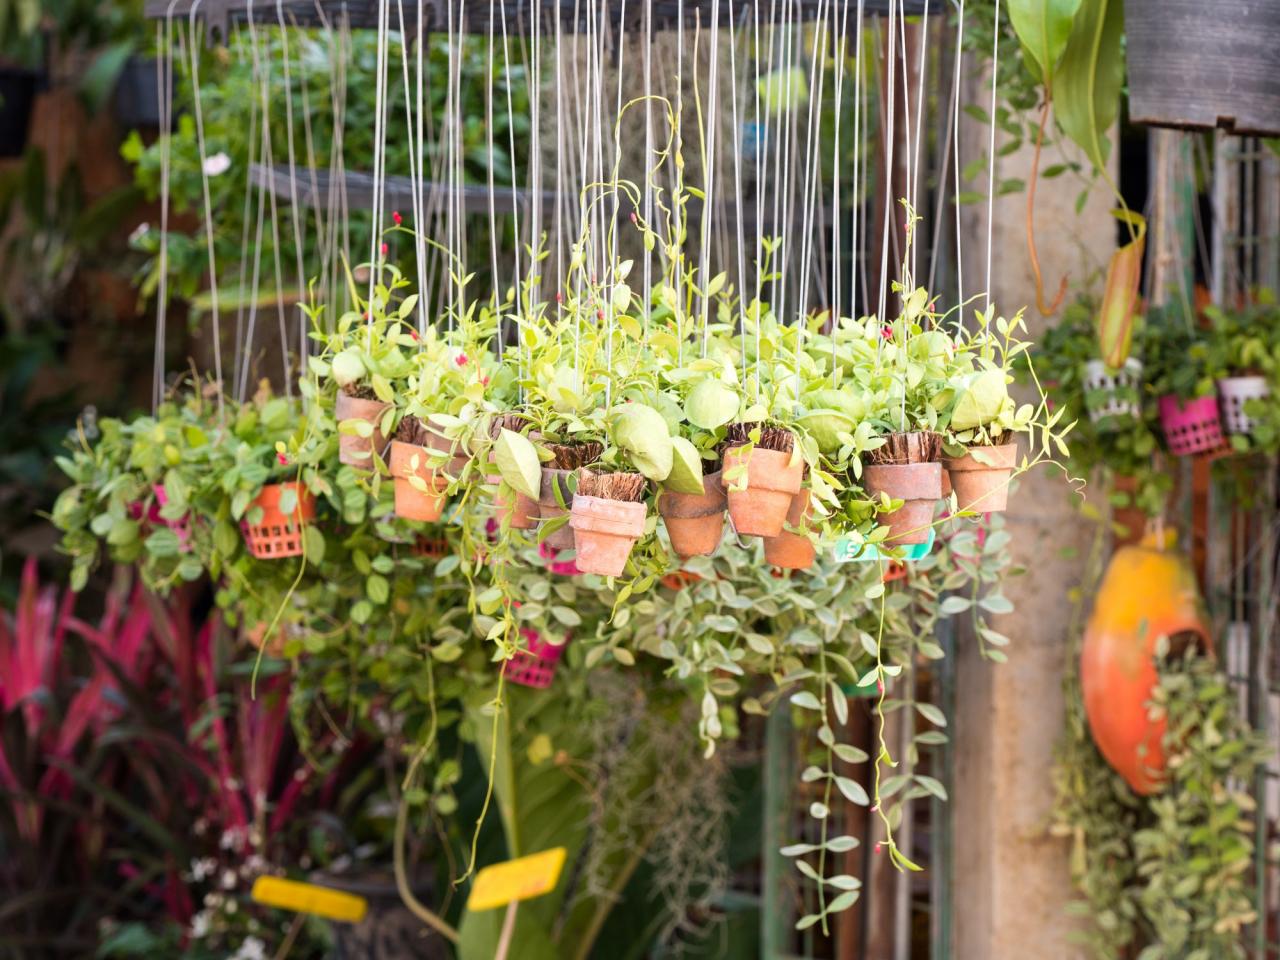 Hanging plant pots - Insta gardening - Argos garden trends 2018